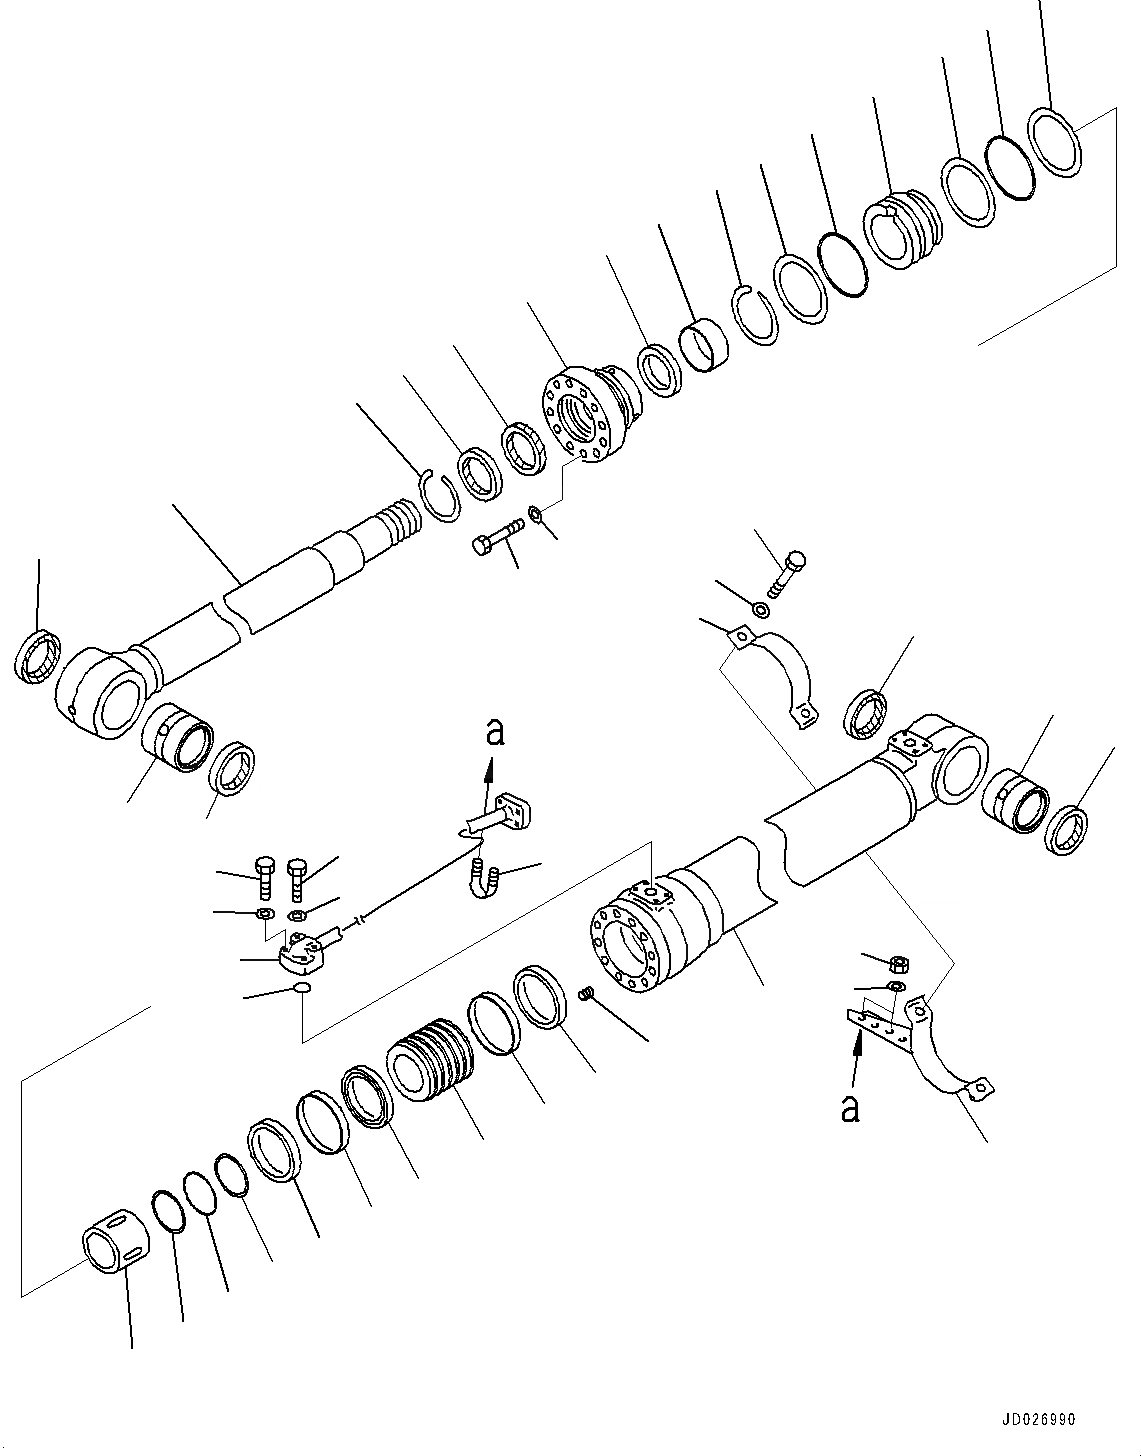 Схема запчастей Komatsu PC220LC-8 - ЦИЛИНДР СТРЕЛЫ, ЛЕВ. (№877-) ЦИЛИНДР СТРЕЛЫ, ДЛЯ СТРЕЛЫ И РУКОЯТЬ ANTI-DROP КЛАПАН